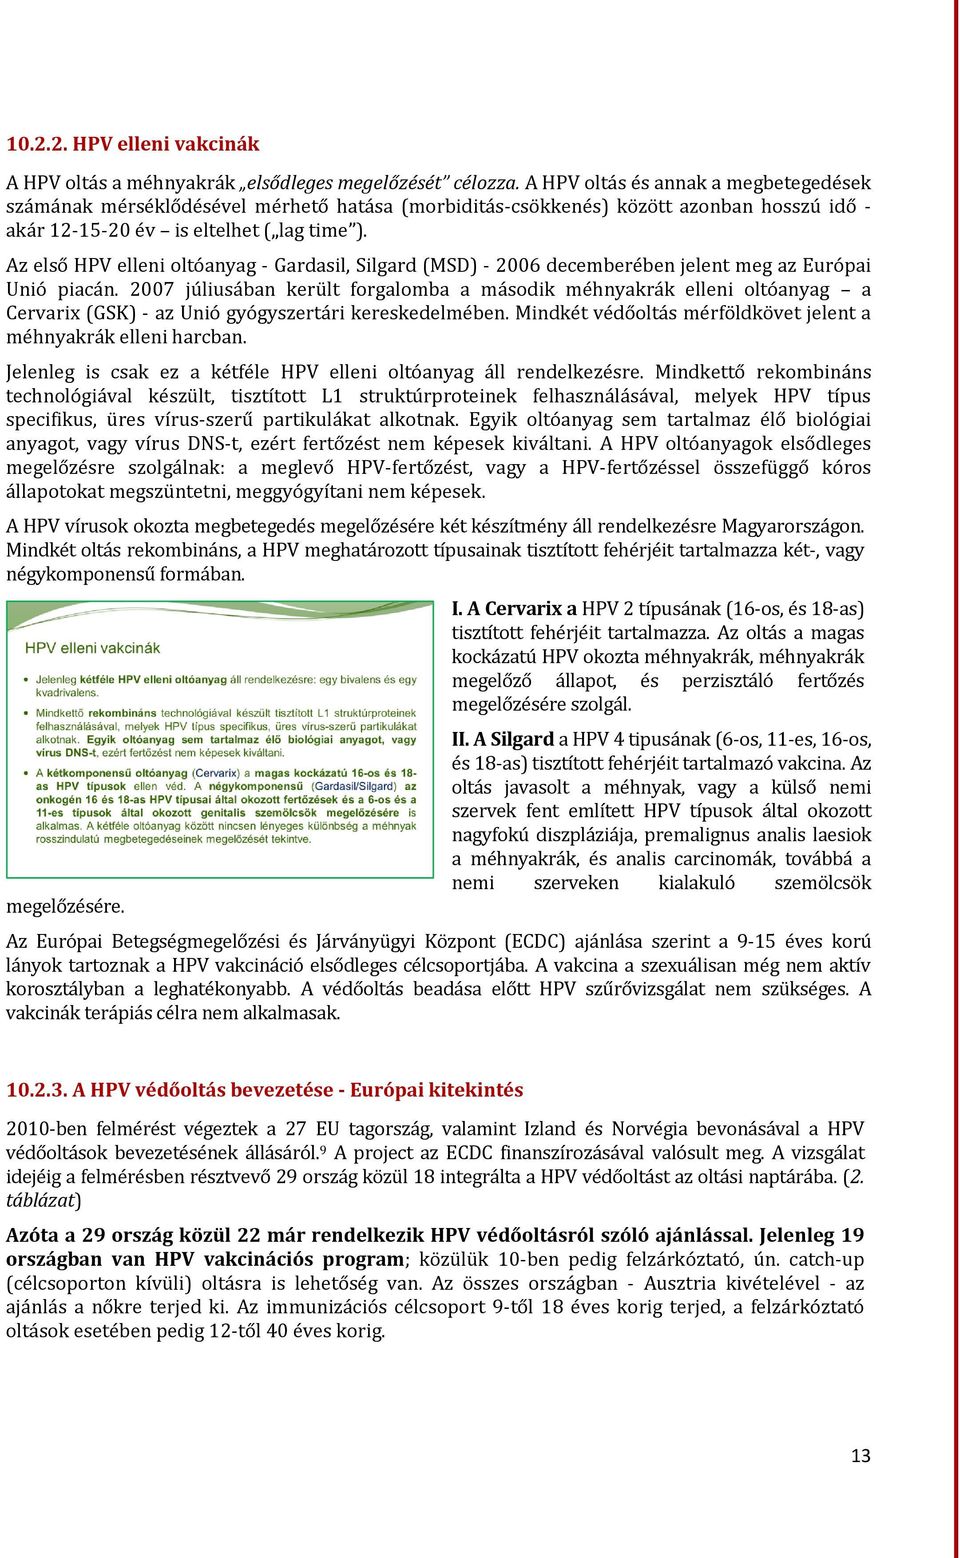 Az első HPV elleni oltóanyag - Gardasil, Silgard (MSD) - 2006 decemberében jelent meg az Európai Unió piacán.